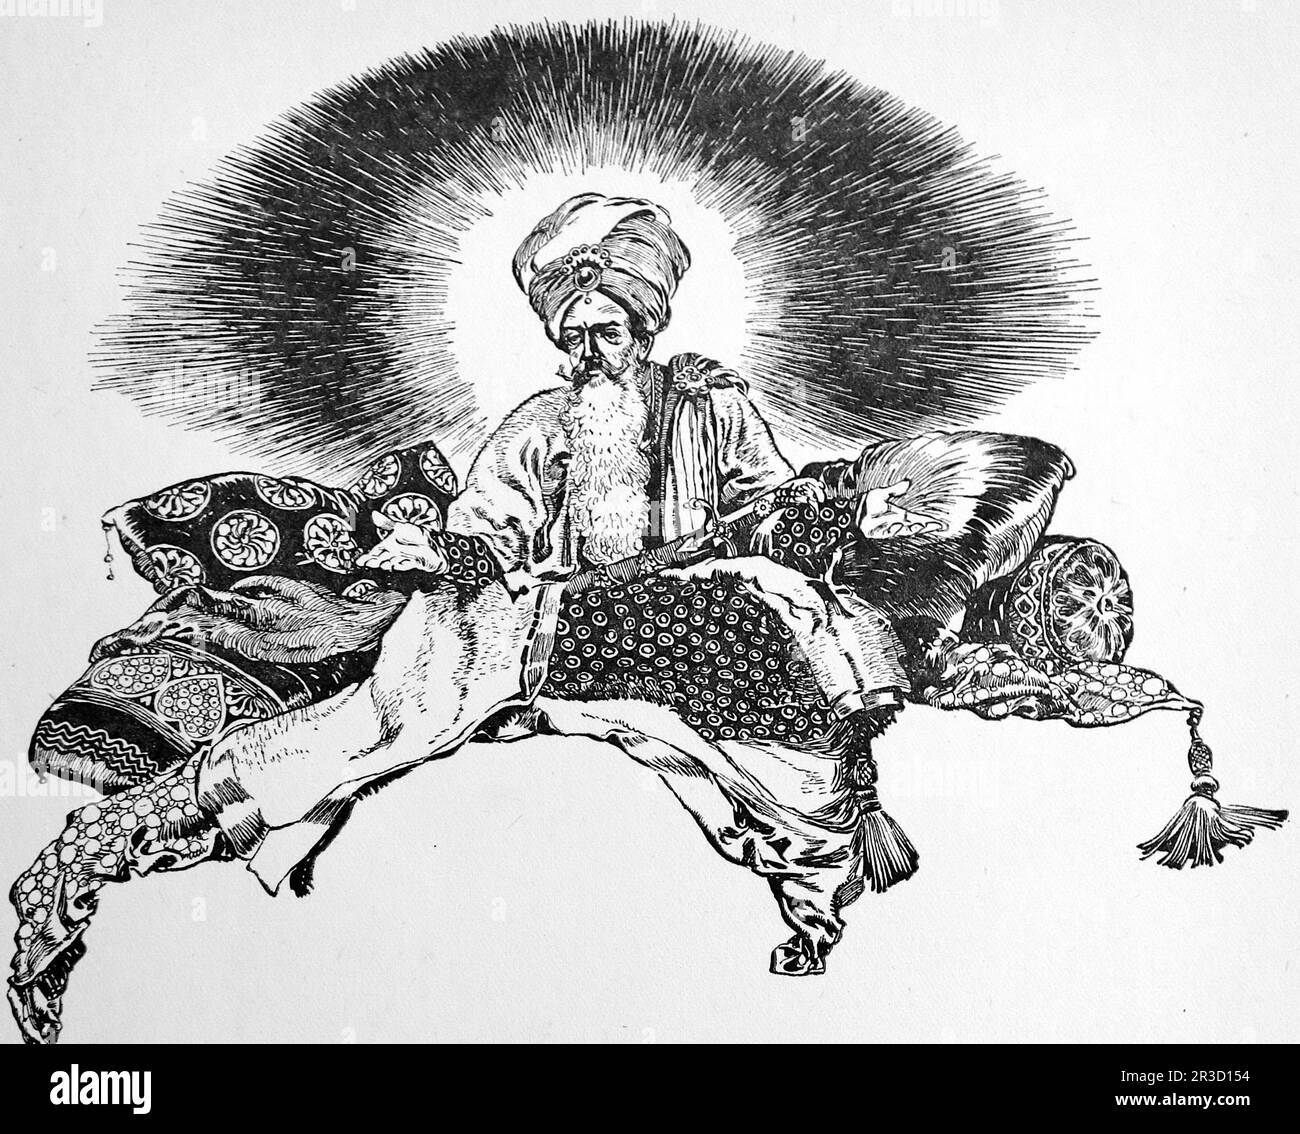 Da parte di Rene Bull Disegno di linea di Mahmud il Signore vittorioso con la sua spada incantata. Dal Rubaiyat di Omar Khayyam. Foto Stock